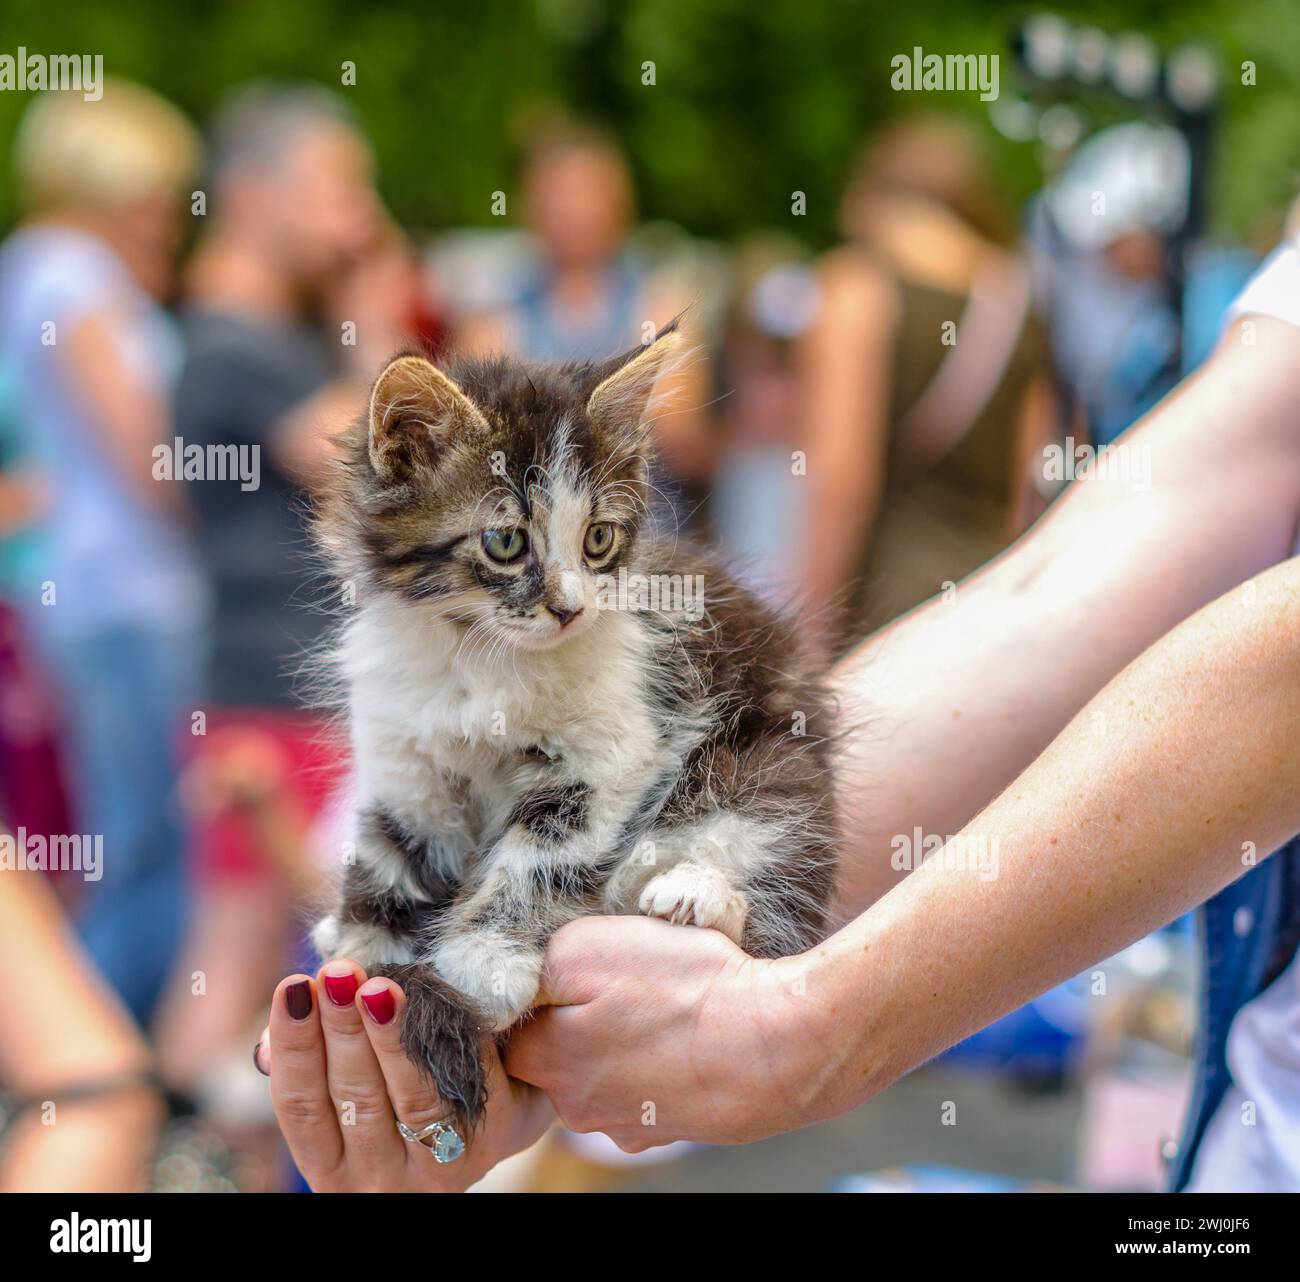 Cuidado de mascotas gatito tabby esponjoso en brazos extendidos femeninos con un anillo y manicura roja en una multitud de personas Foto de stock